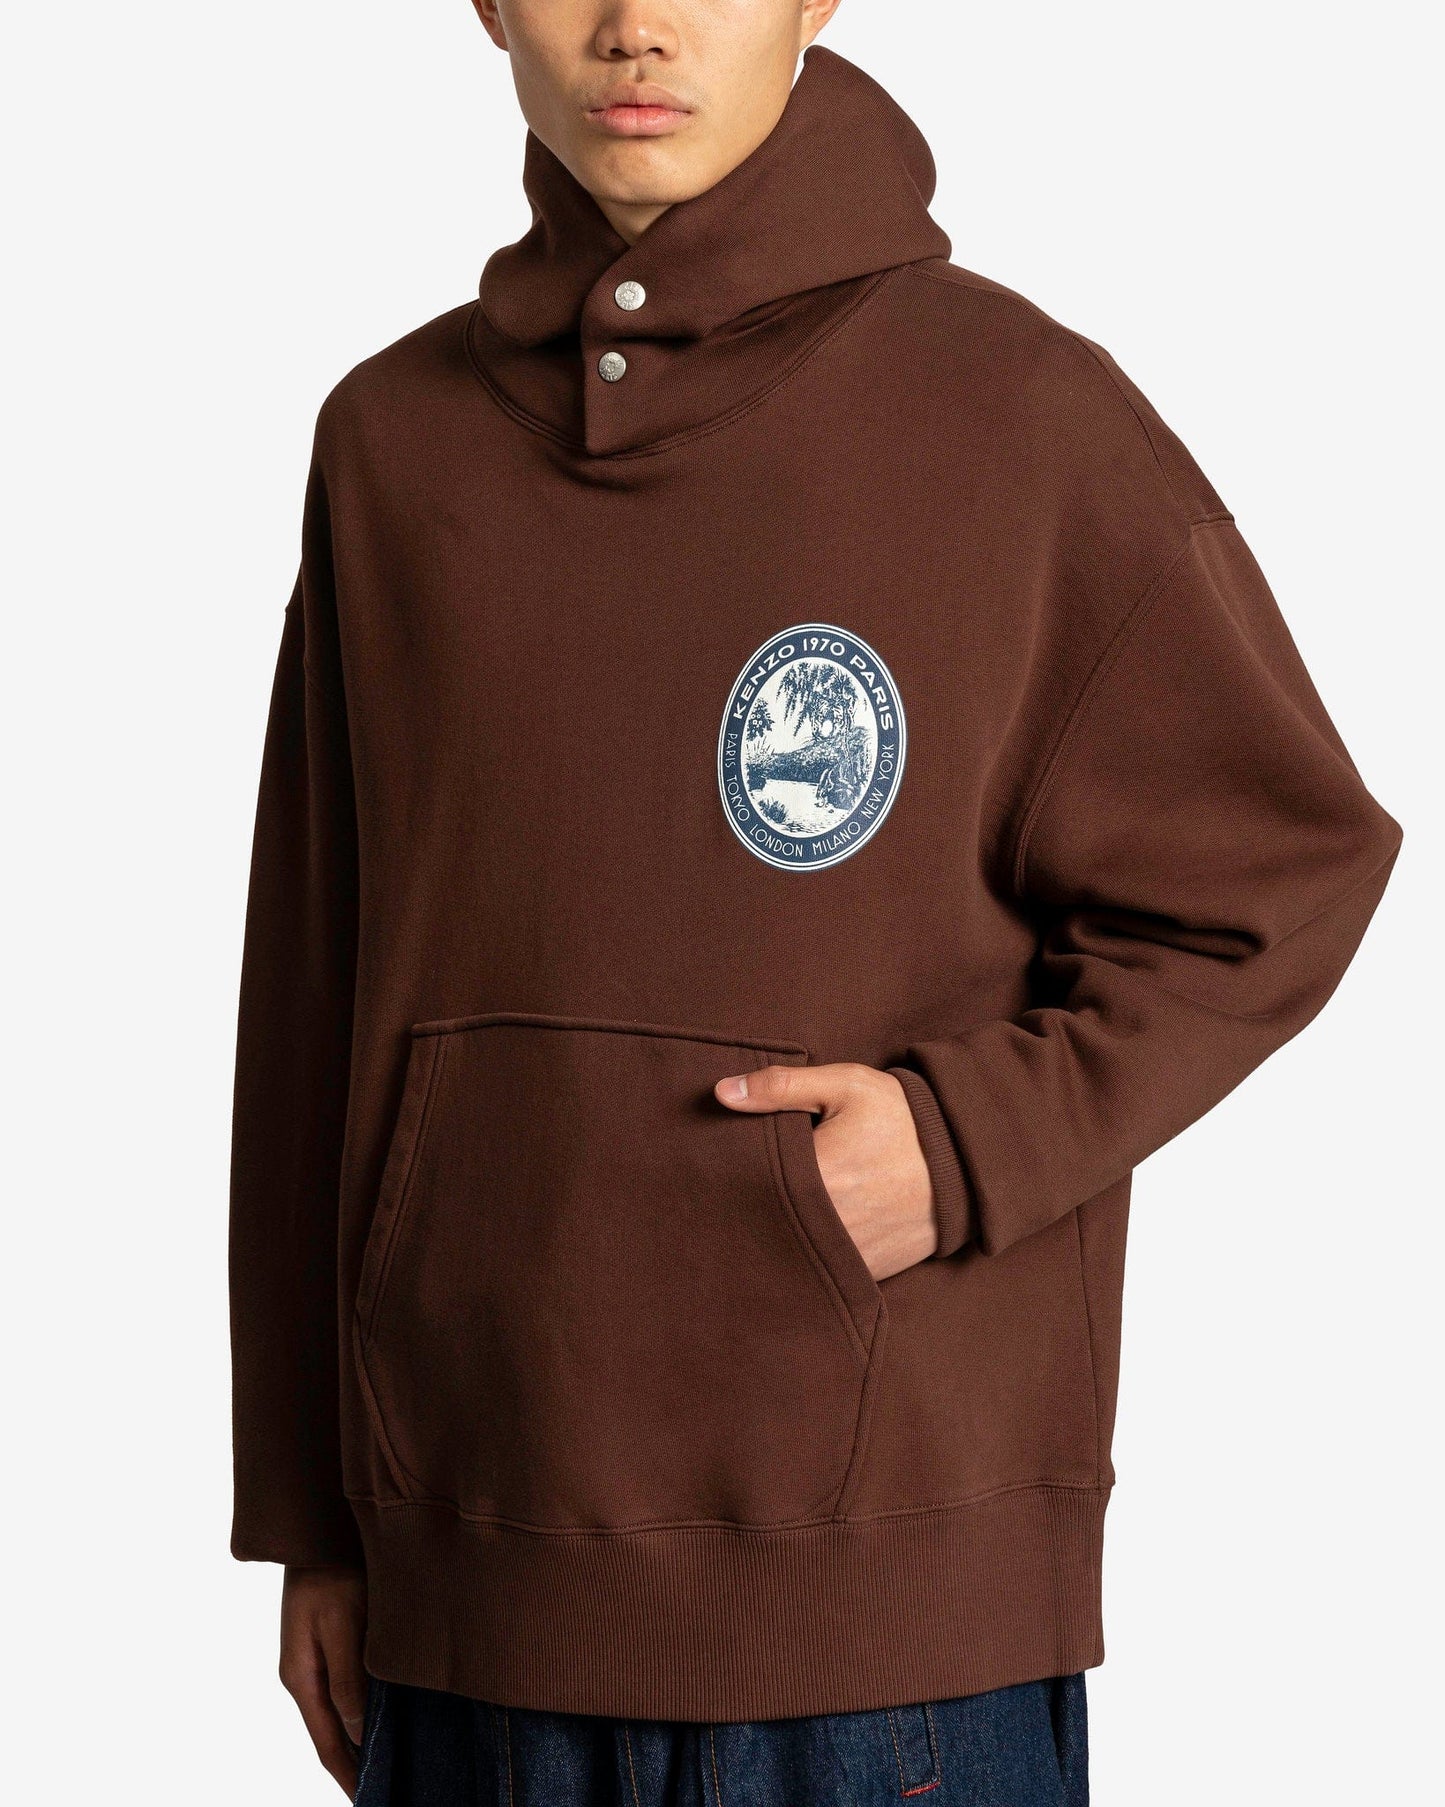 KENZO Men's Sweatshirts Tiger Patch Oversized Hoodie in Dark Brown